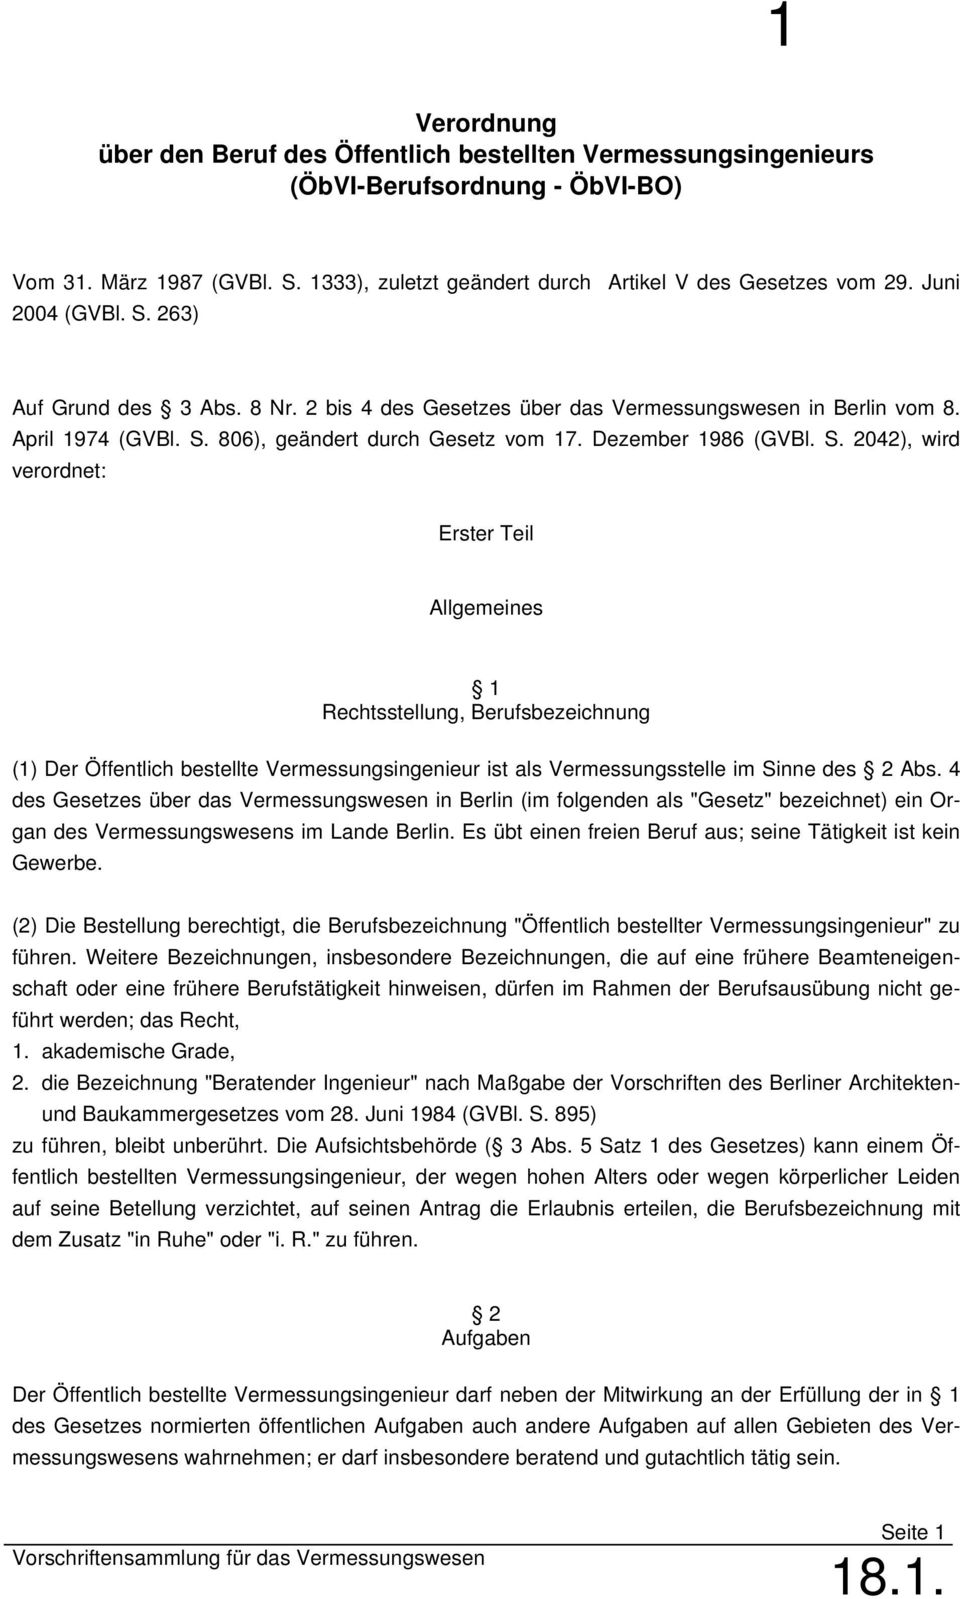 4 des Gesetzes über das Vermessungswesen in Berlin (im folgenden als "Gesetz" bezeichnet) ein Organ des Vermessungswesens im Lande Berlin.